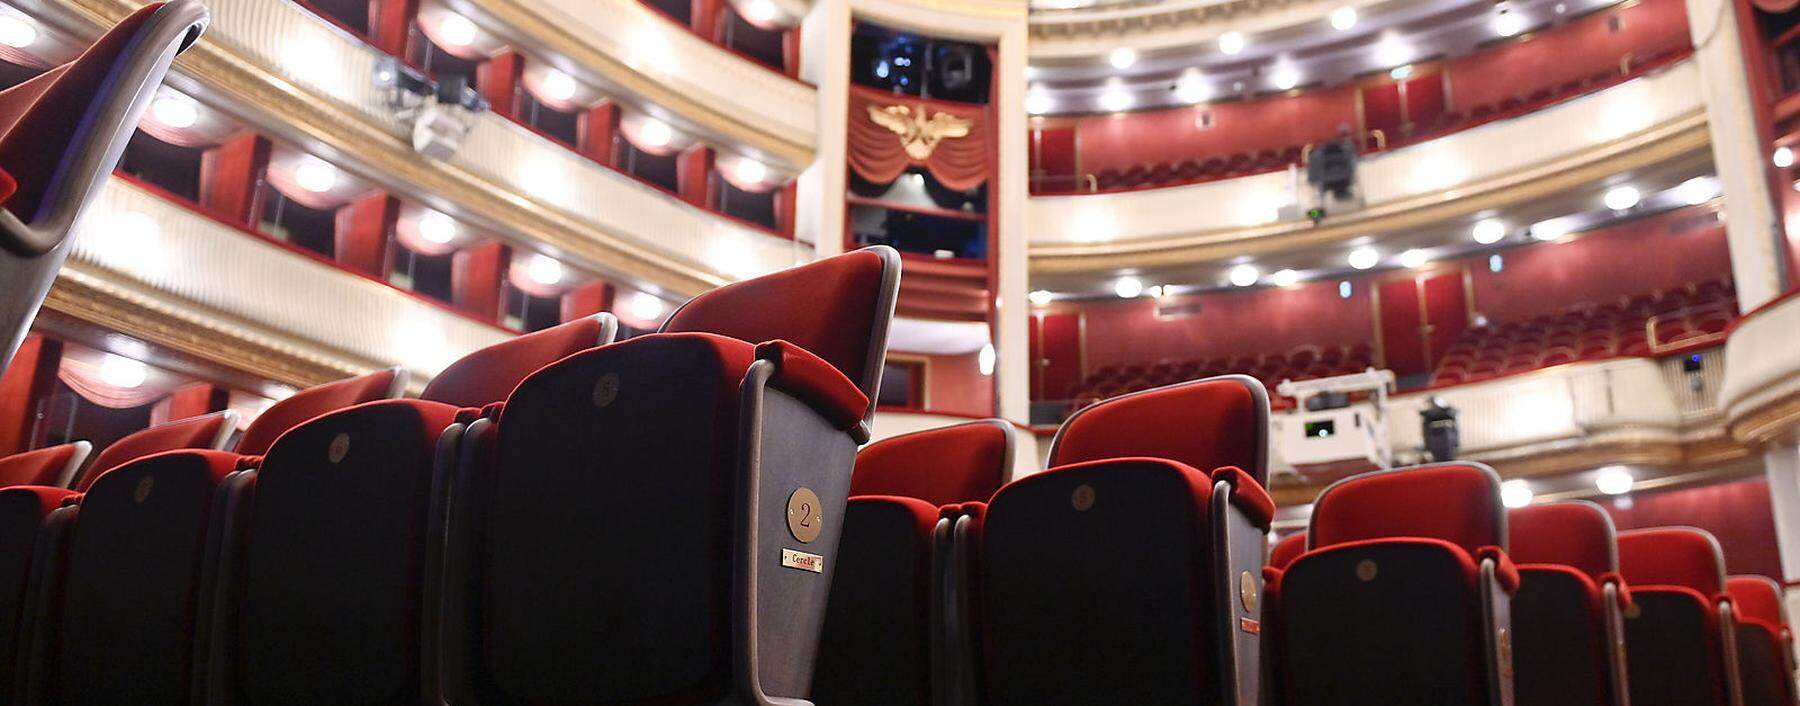 So leer ist es nicht, aber mitnichten voll: Auch im Burgtheater ist die Auslastung weit niedriger als vor Corona.